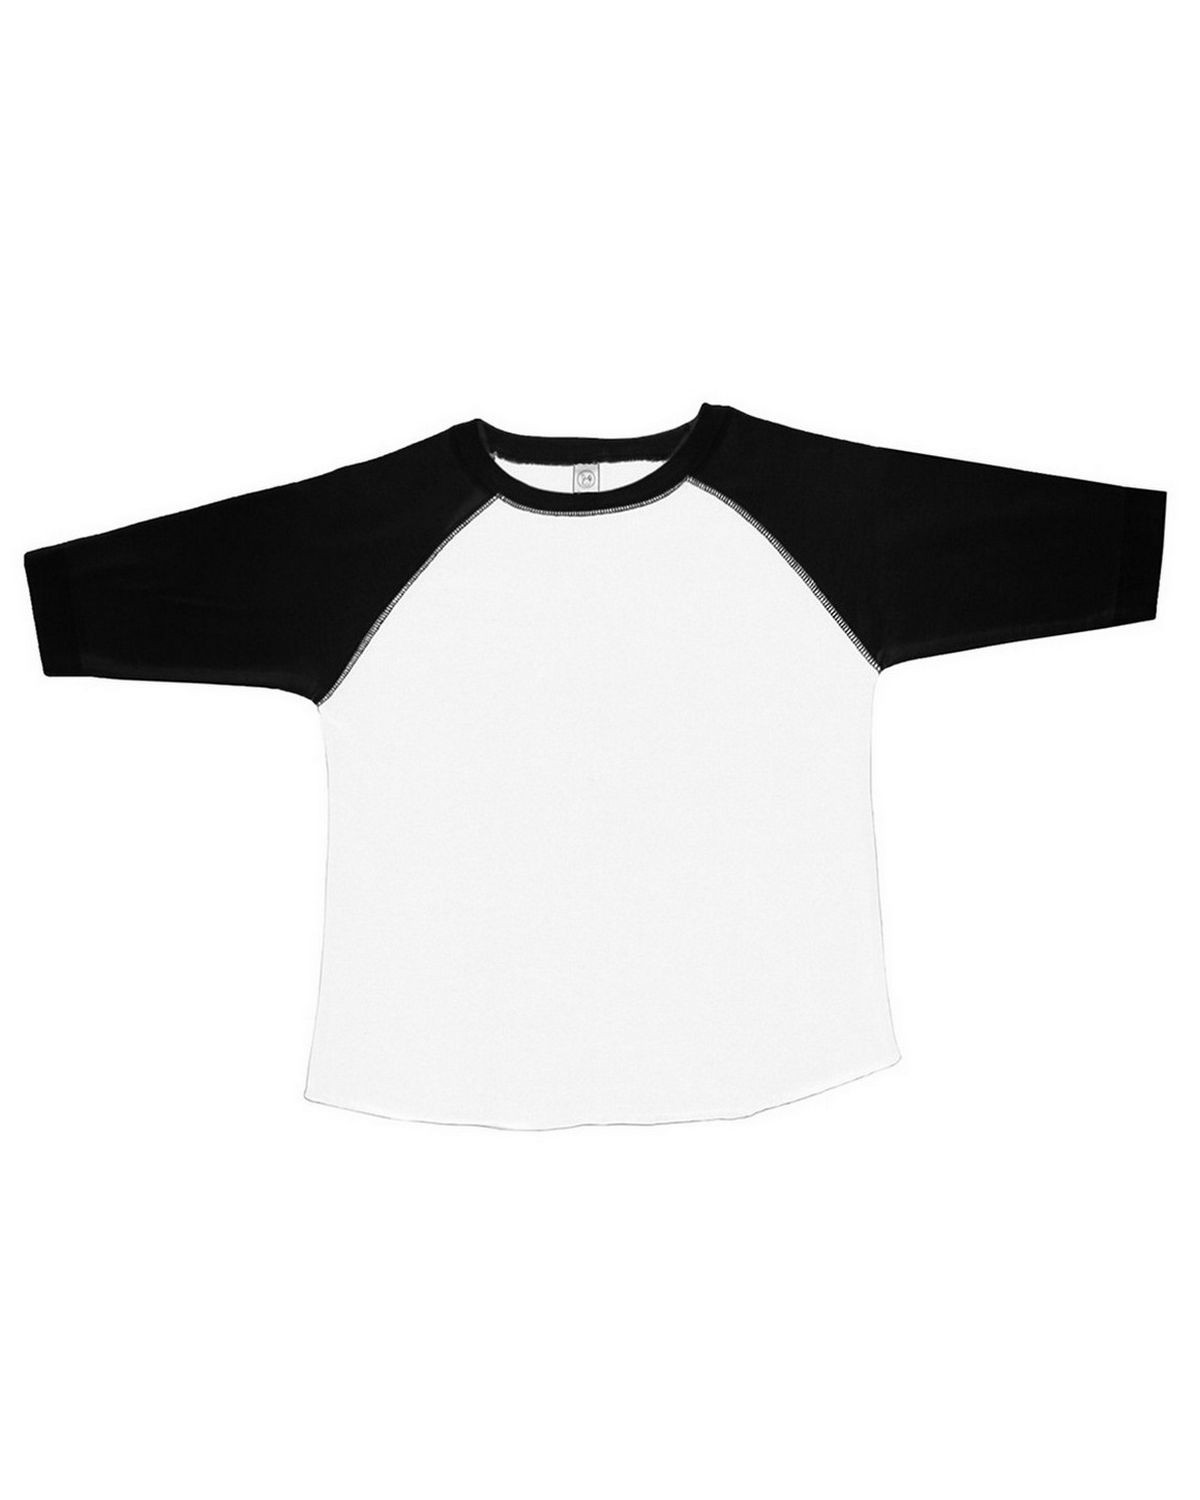 Rabbit Skins RS3330 Toddler Vintage Fine Jersey Baseball T-Shirt - White/ Black - 4T #vintage